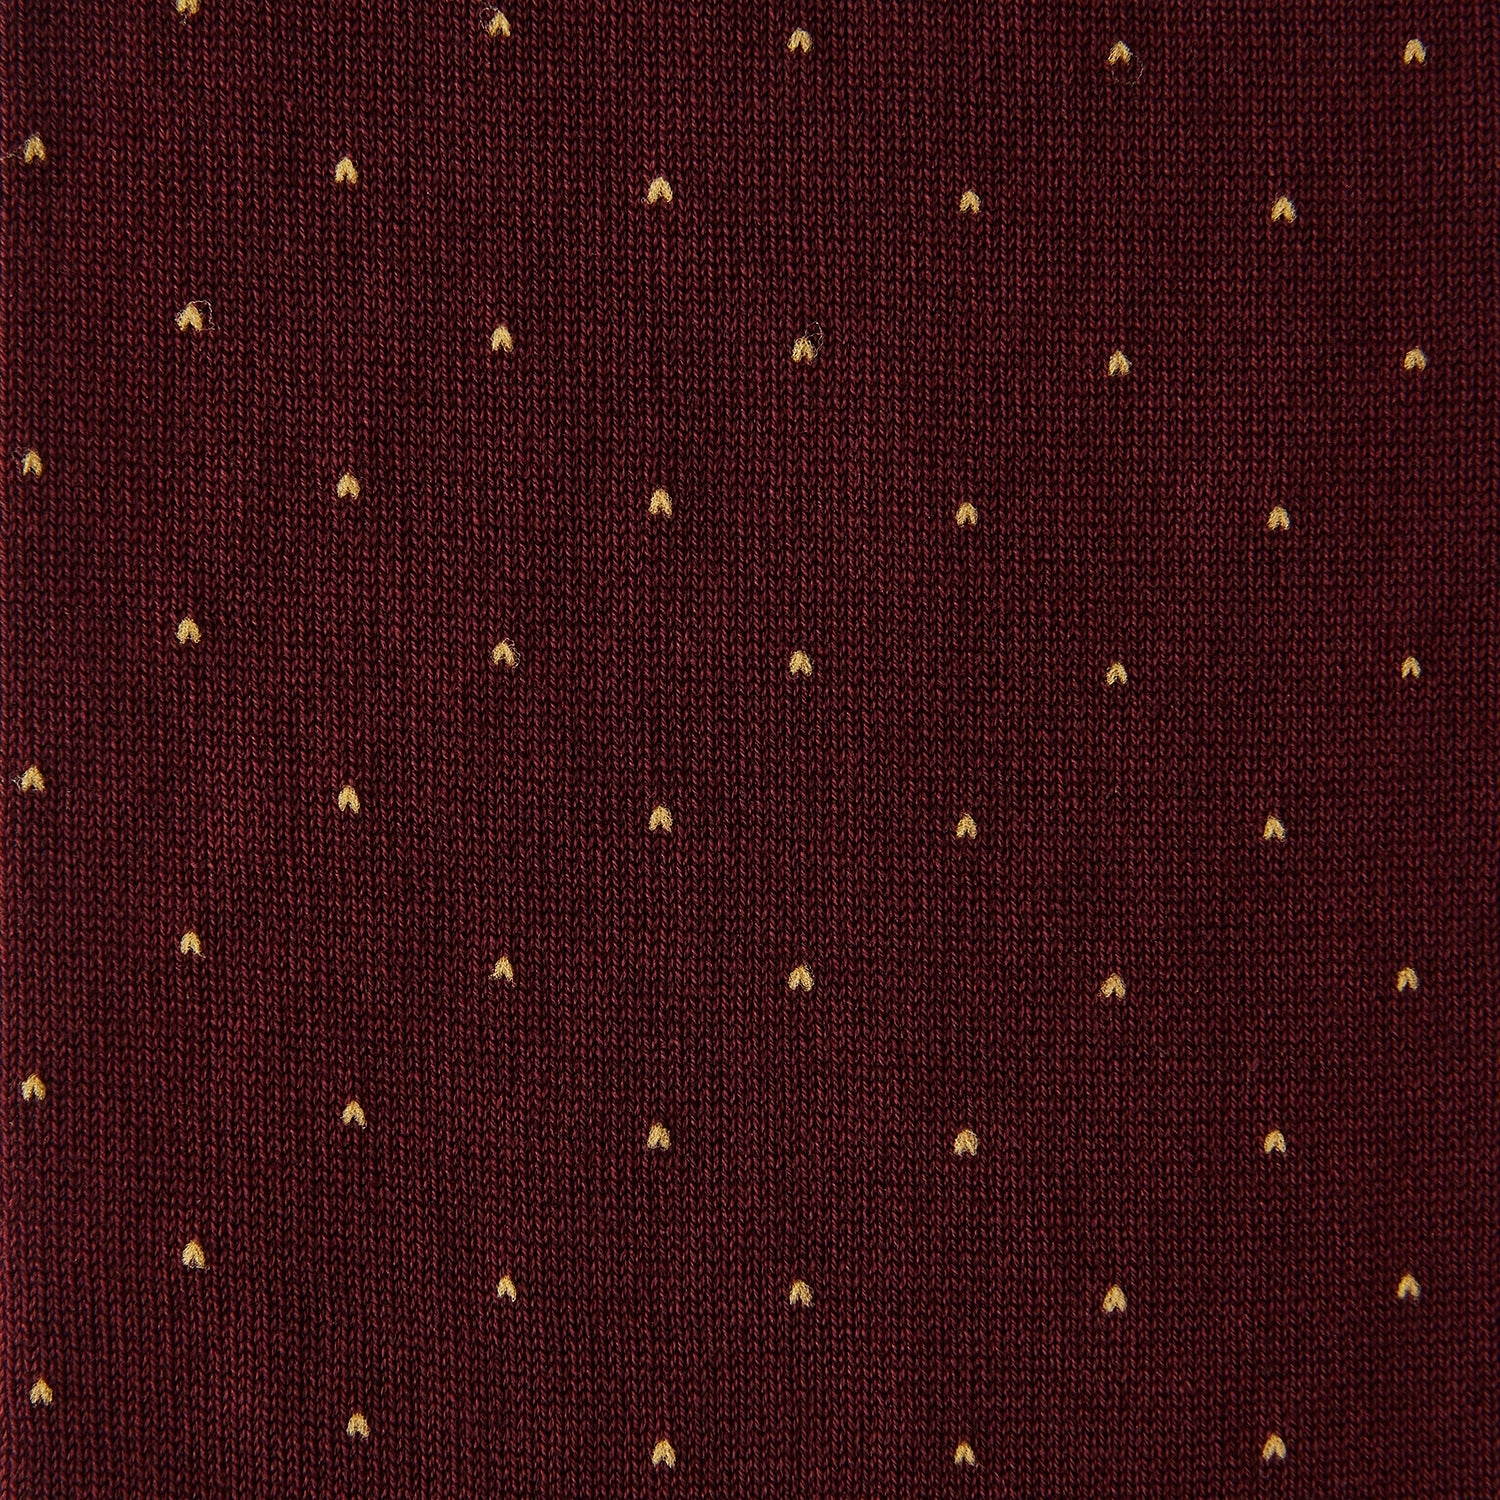 Burgundy and Gold Polka Dot Cotton Mid-length Socks